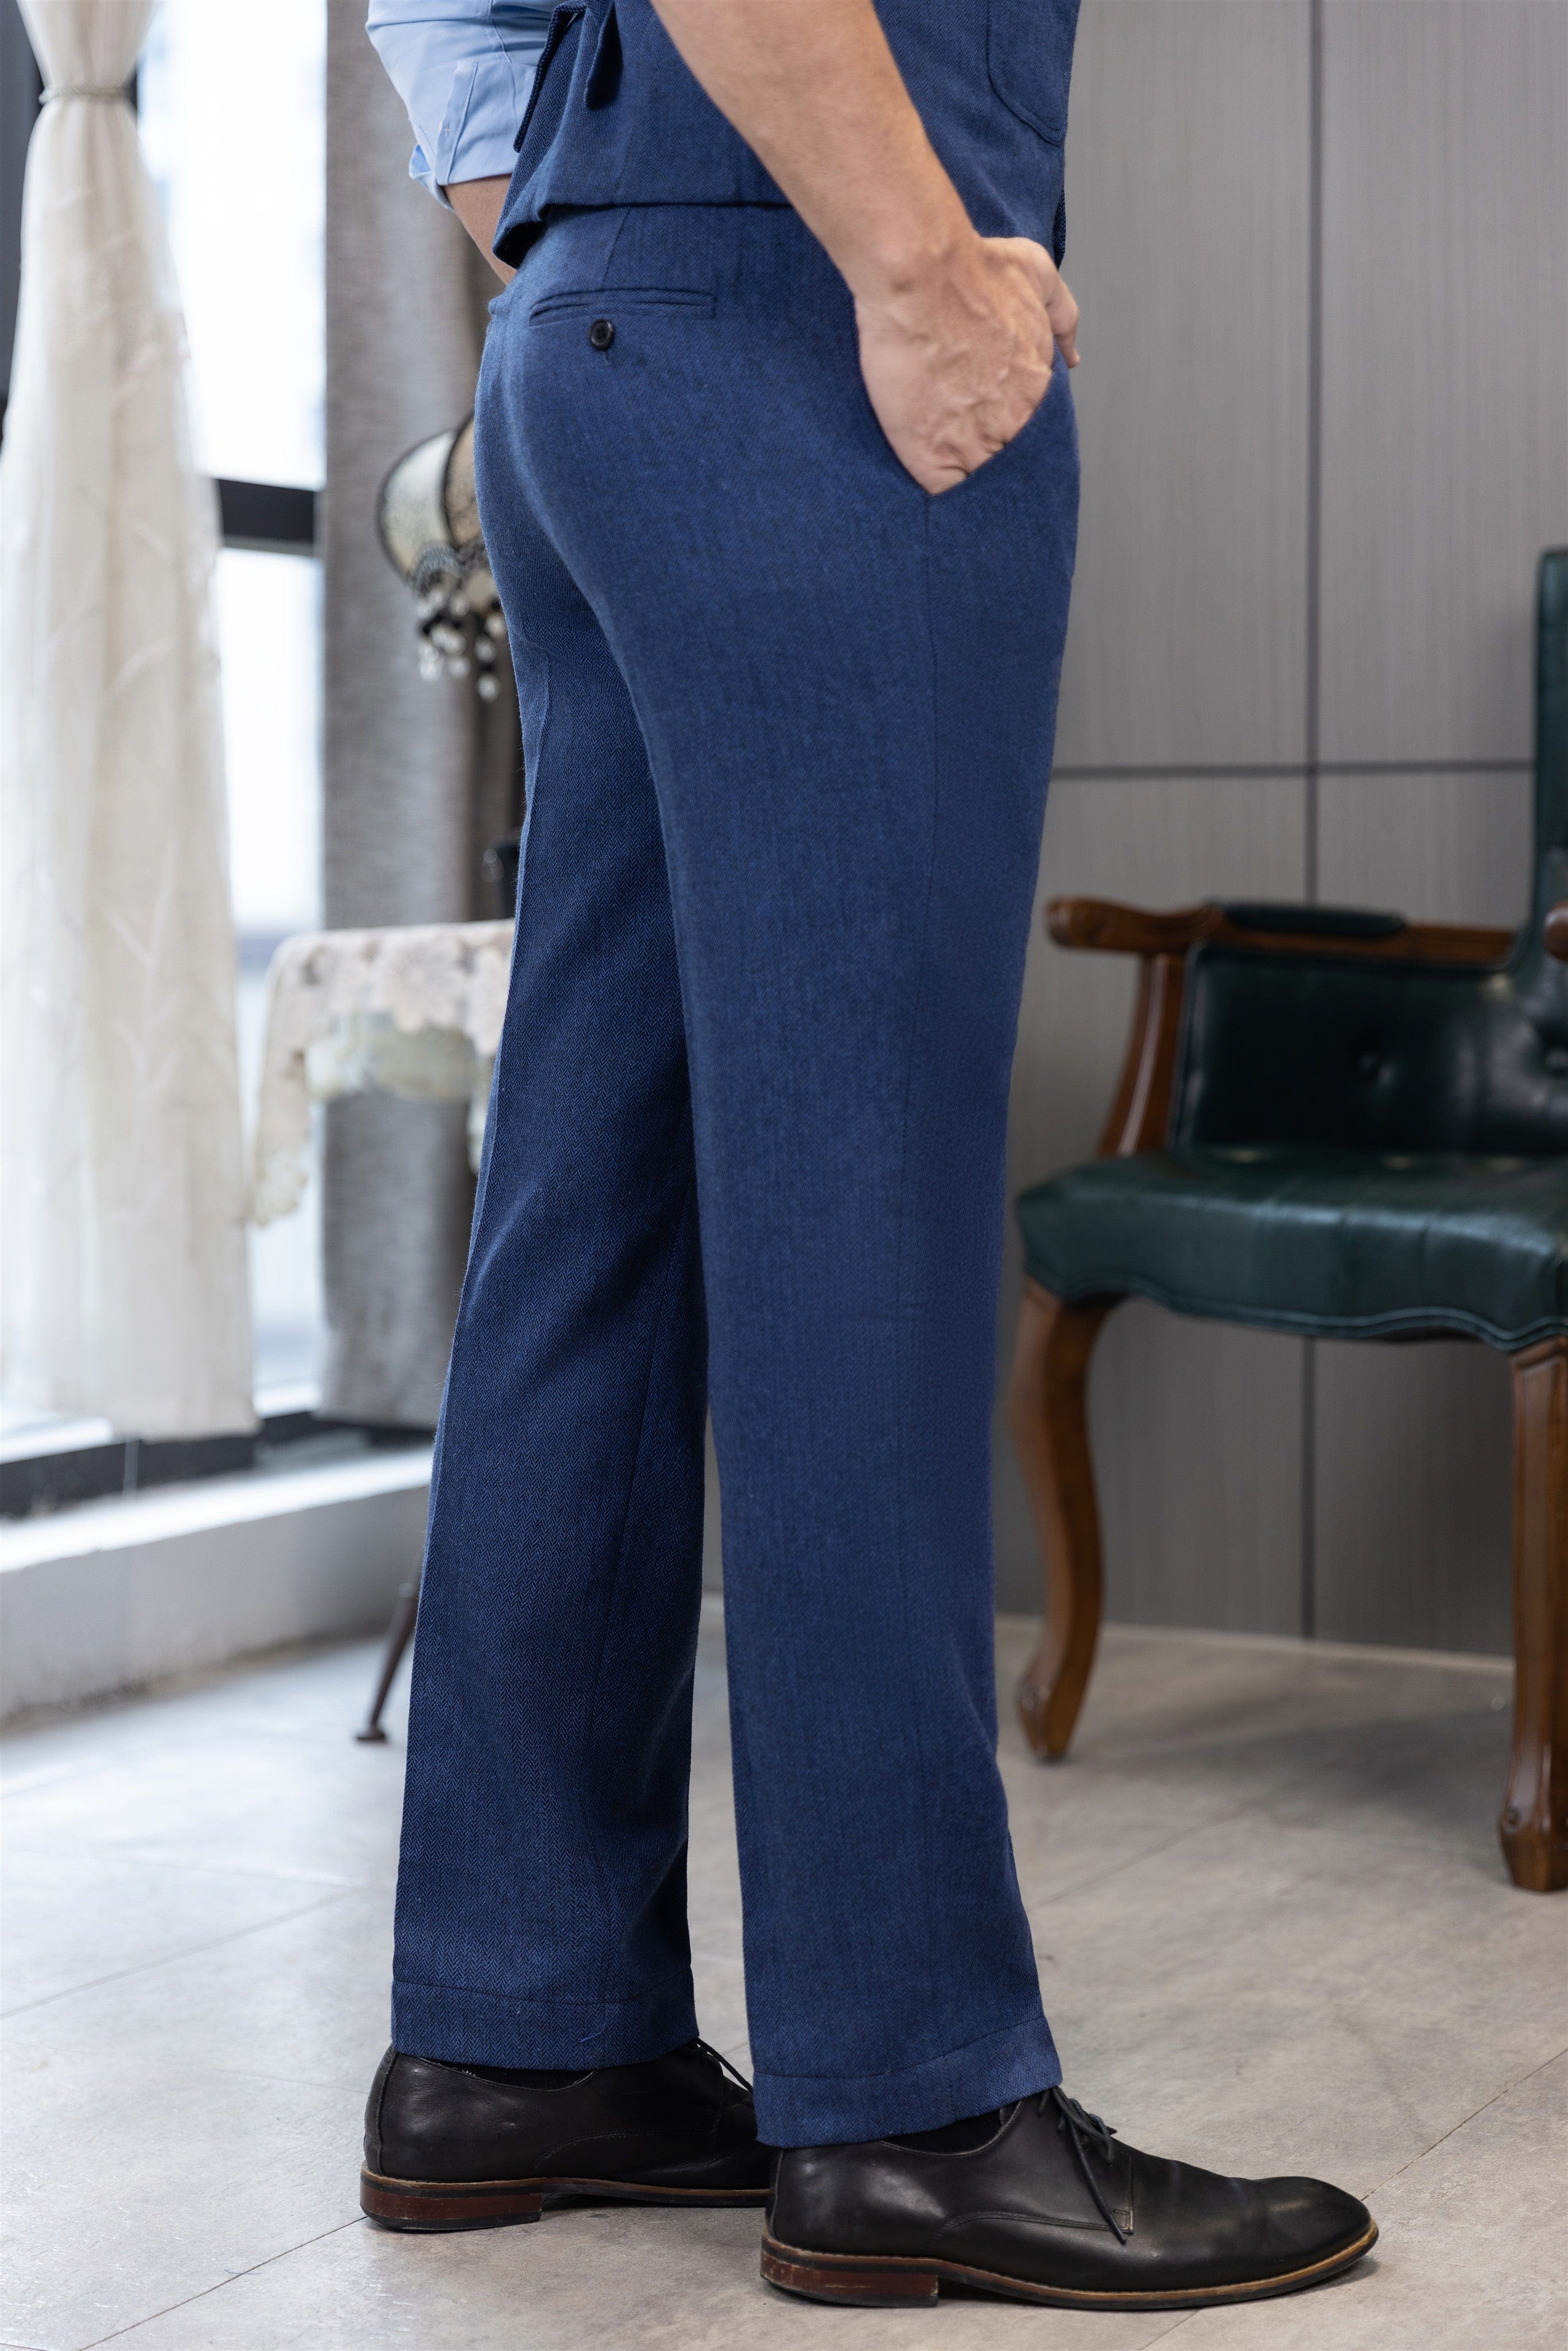 ceehuteey Men's Winter Casual Herringbone Formal Tweed Trousers